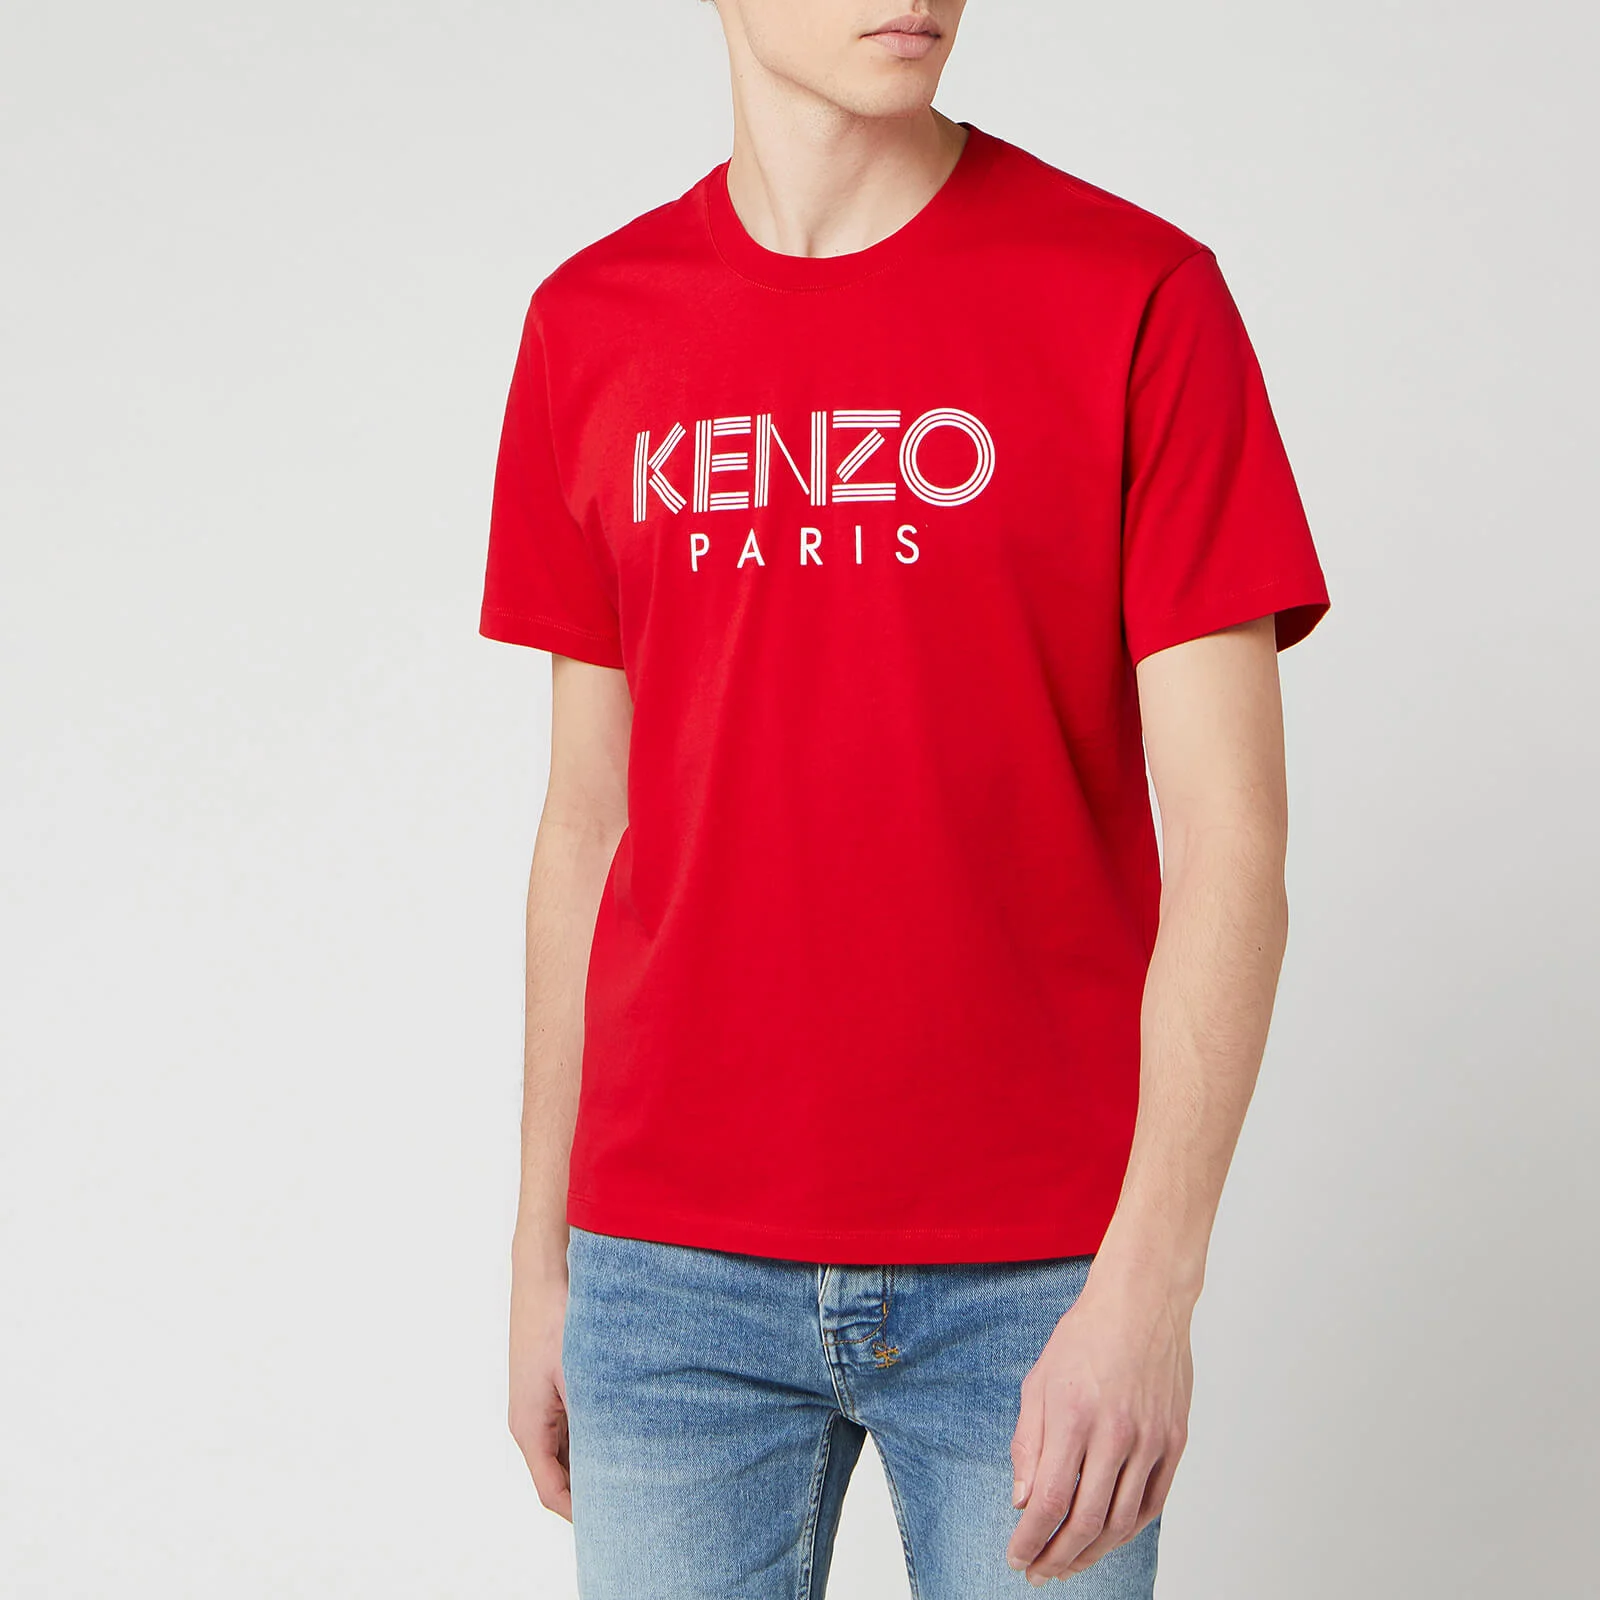 KENZO Men's Classic Paris T-Shirt - Medium Red Image 1